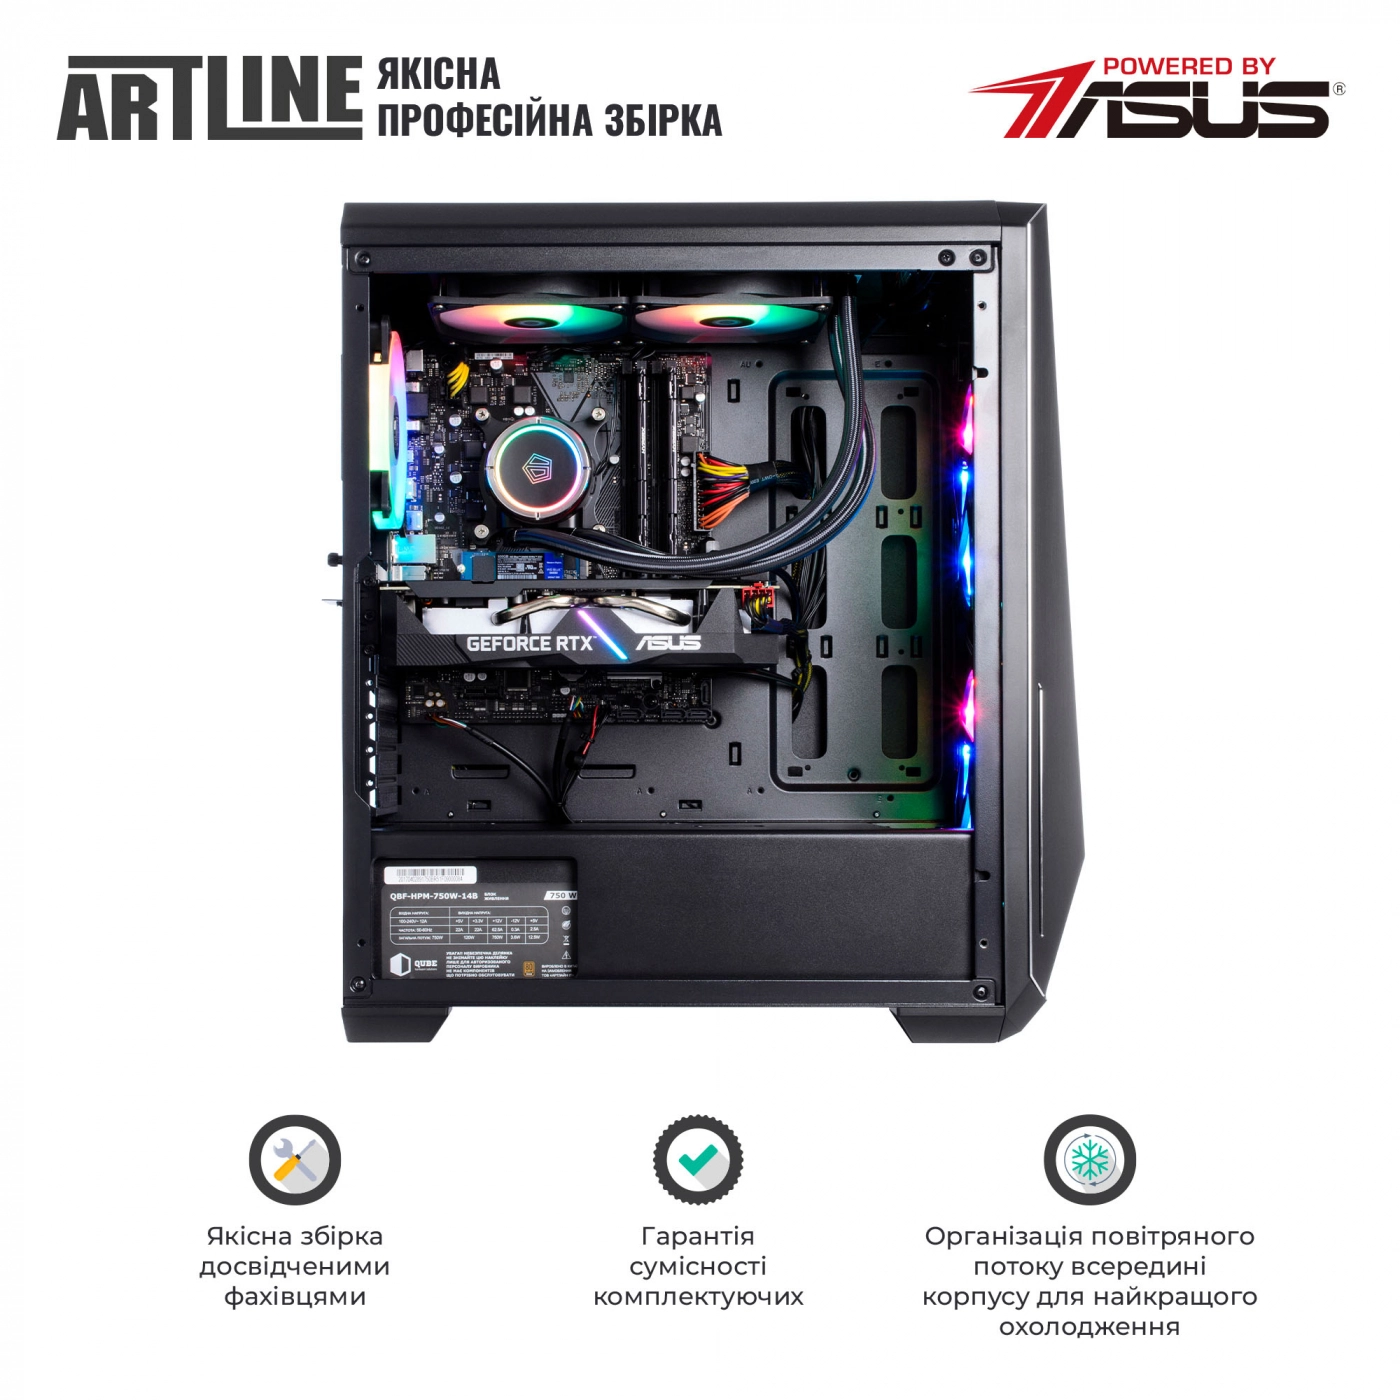 Купить Компьютер ARTLINE Gaming X79v43 - фото 8